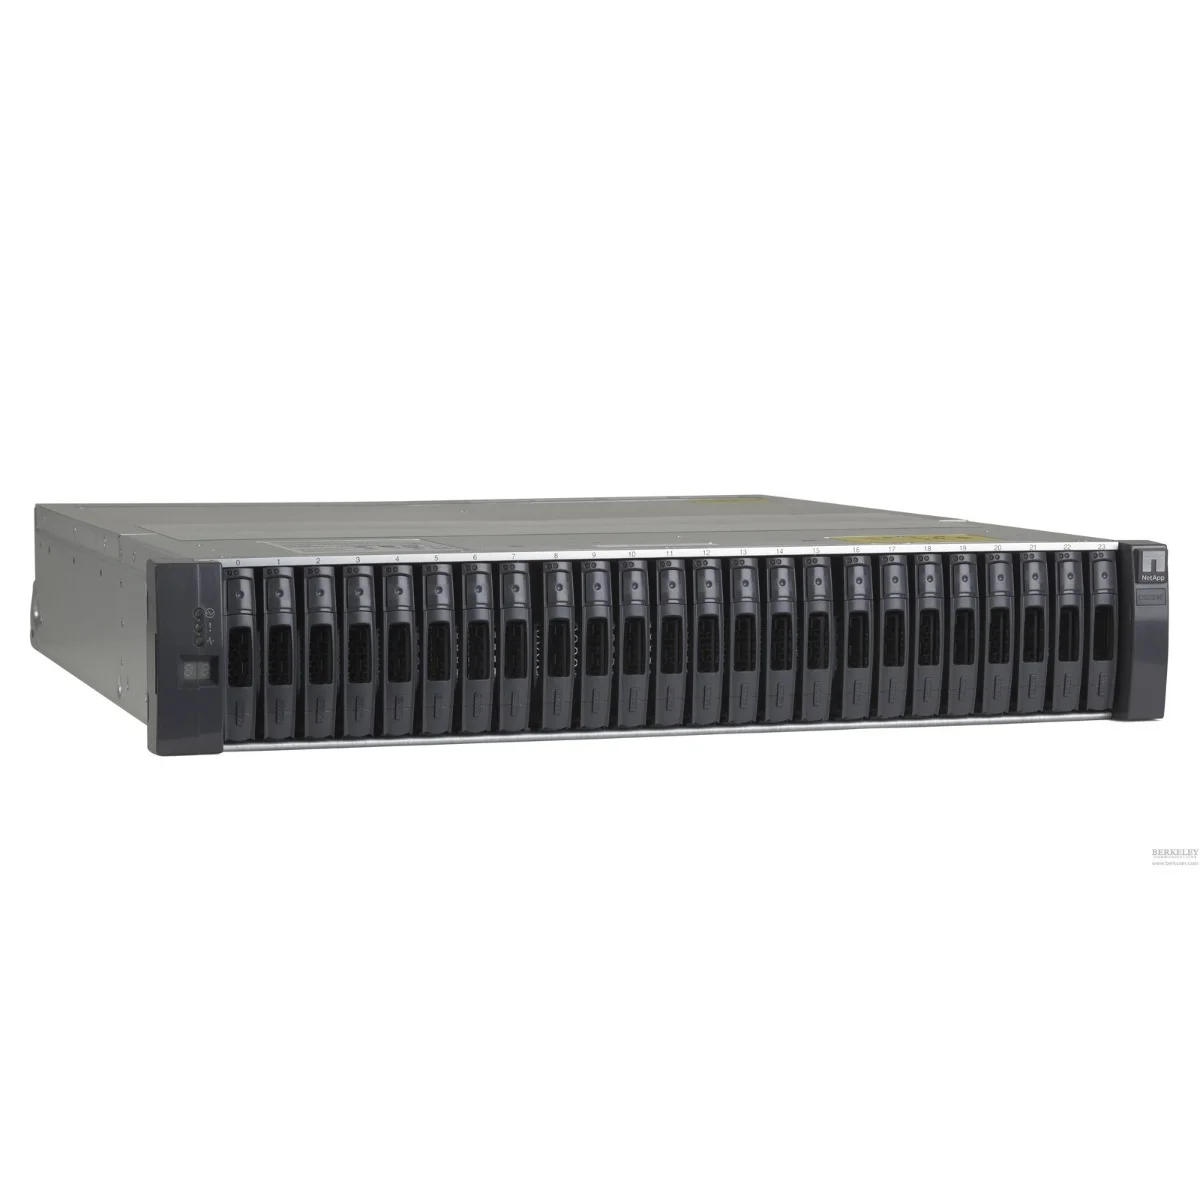 NetApp DS2246 Disk Shelf Storage Array